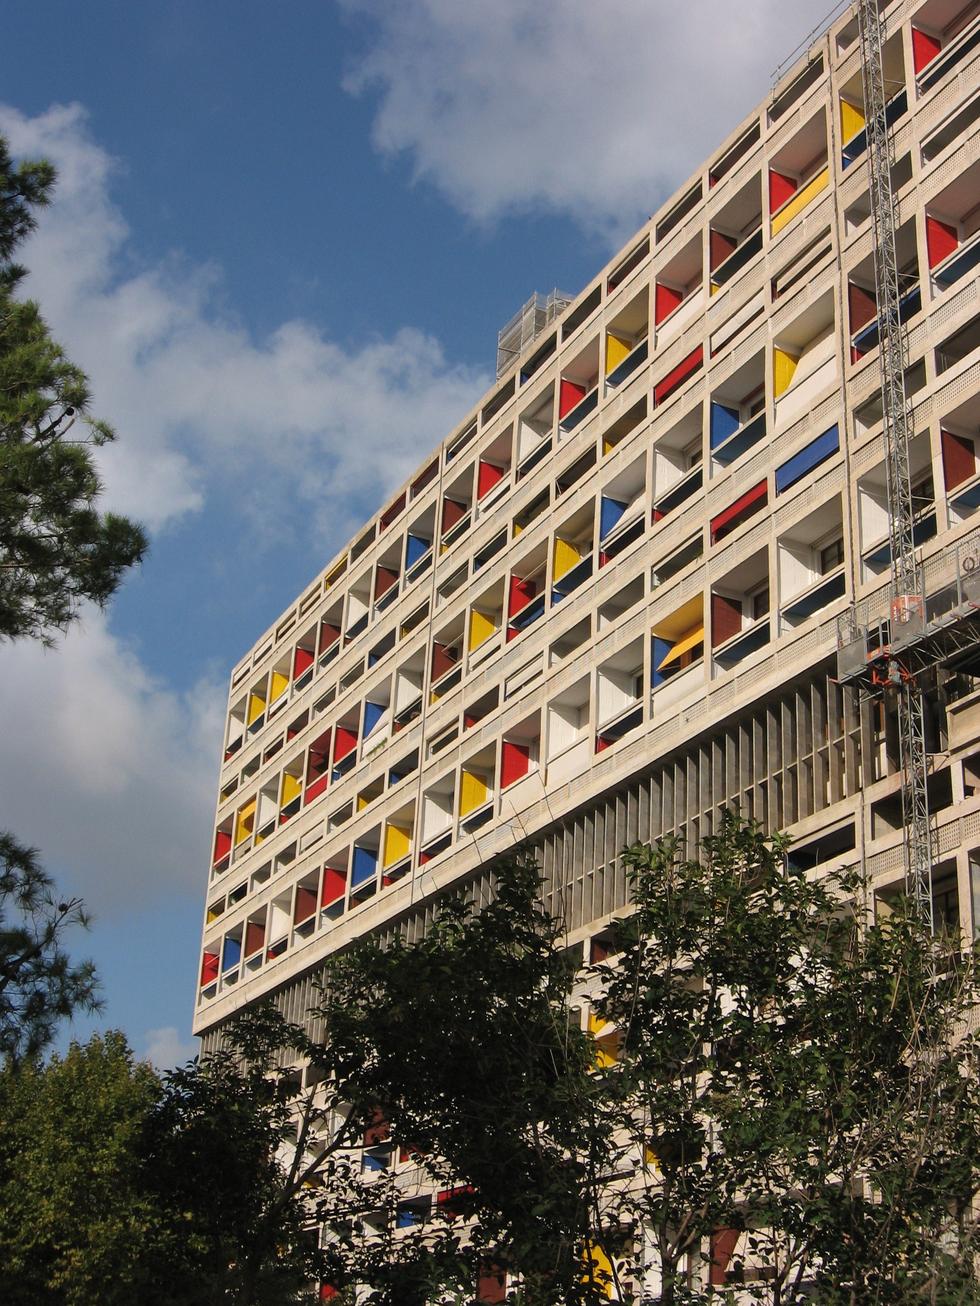 Jednostka Marsylska – le Corbusier i jego maszyny do mieszkania